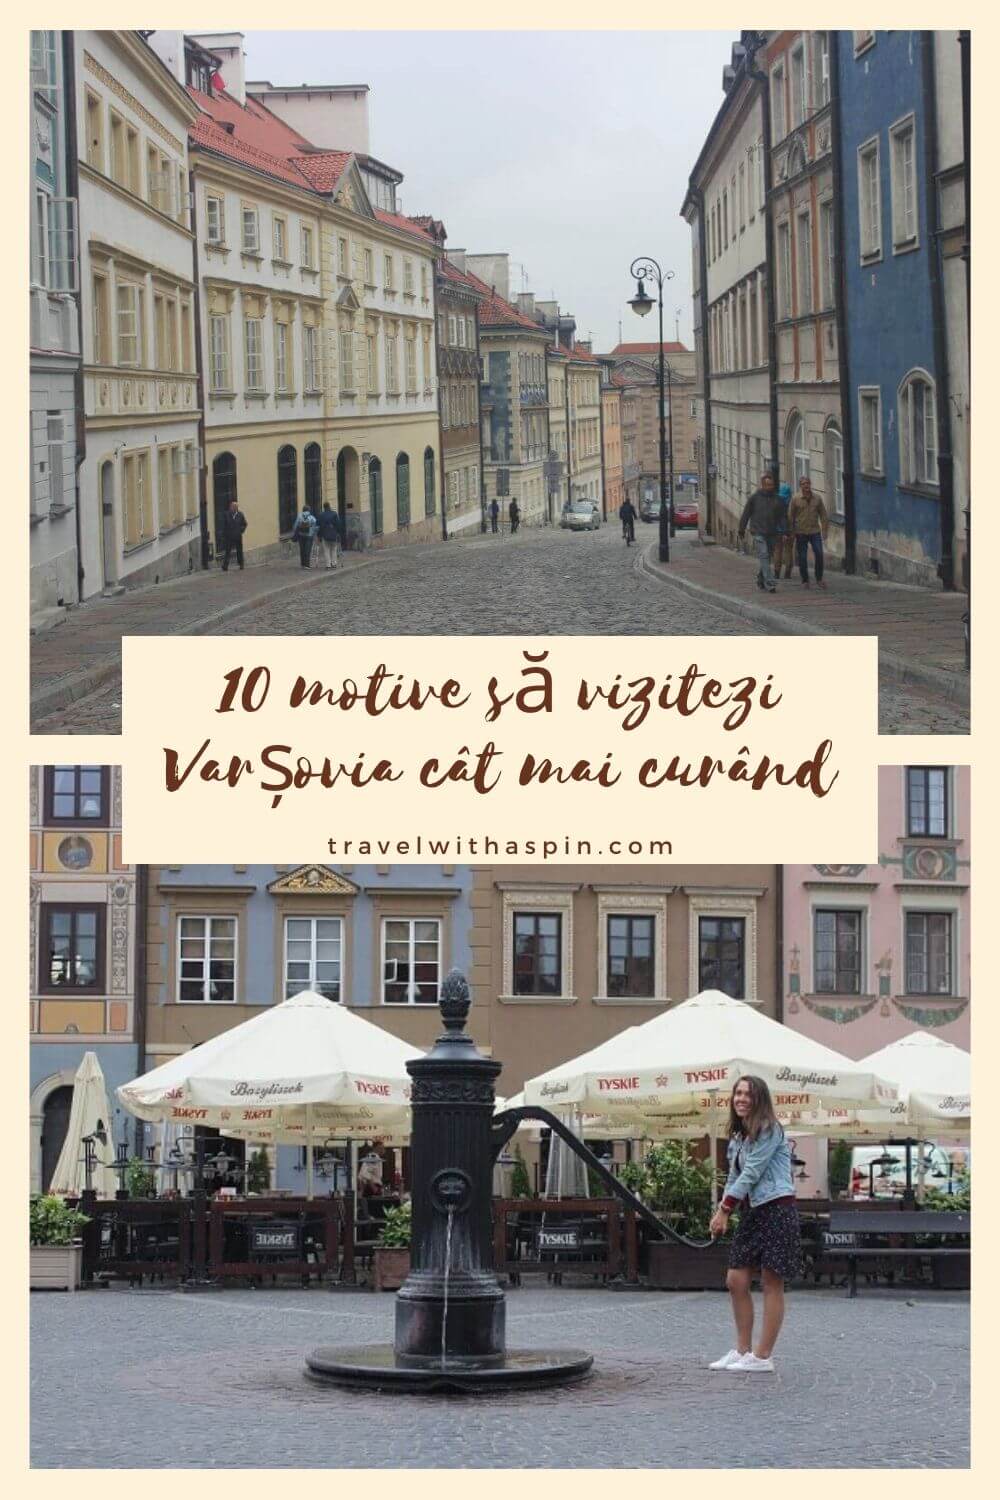 10 motive sa vizitezi Varsovia